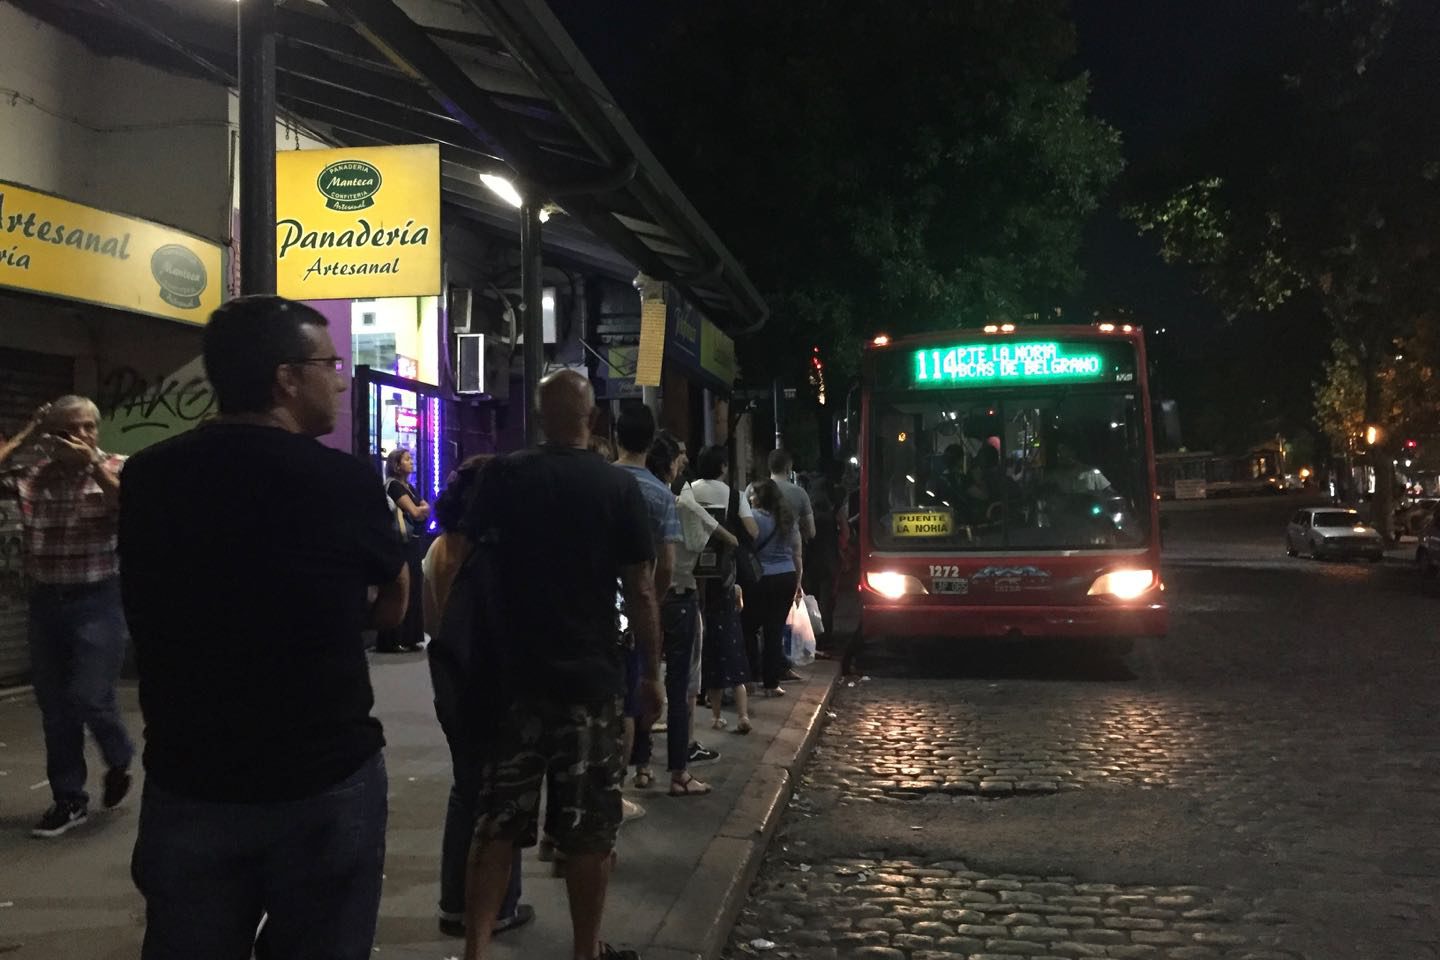 Colectivo (bus) en Buenos Aires.